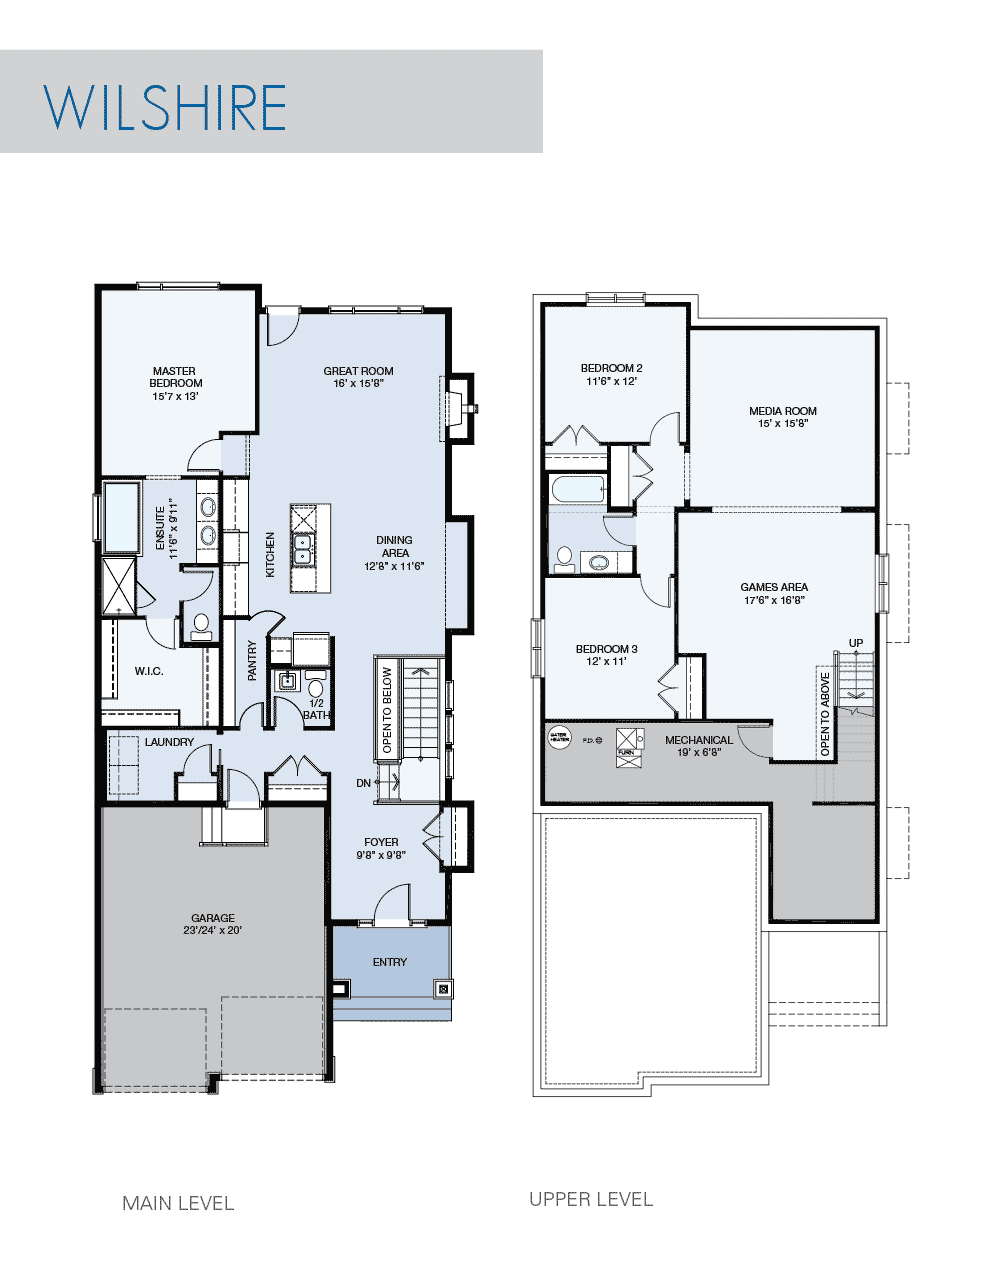 Wilshire floorplan